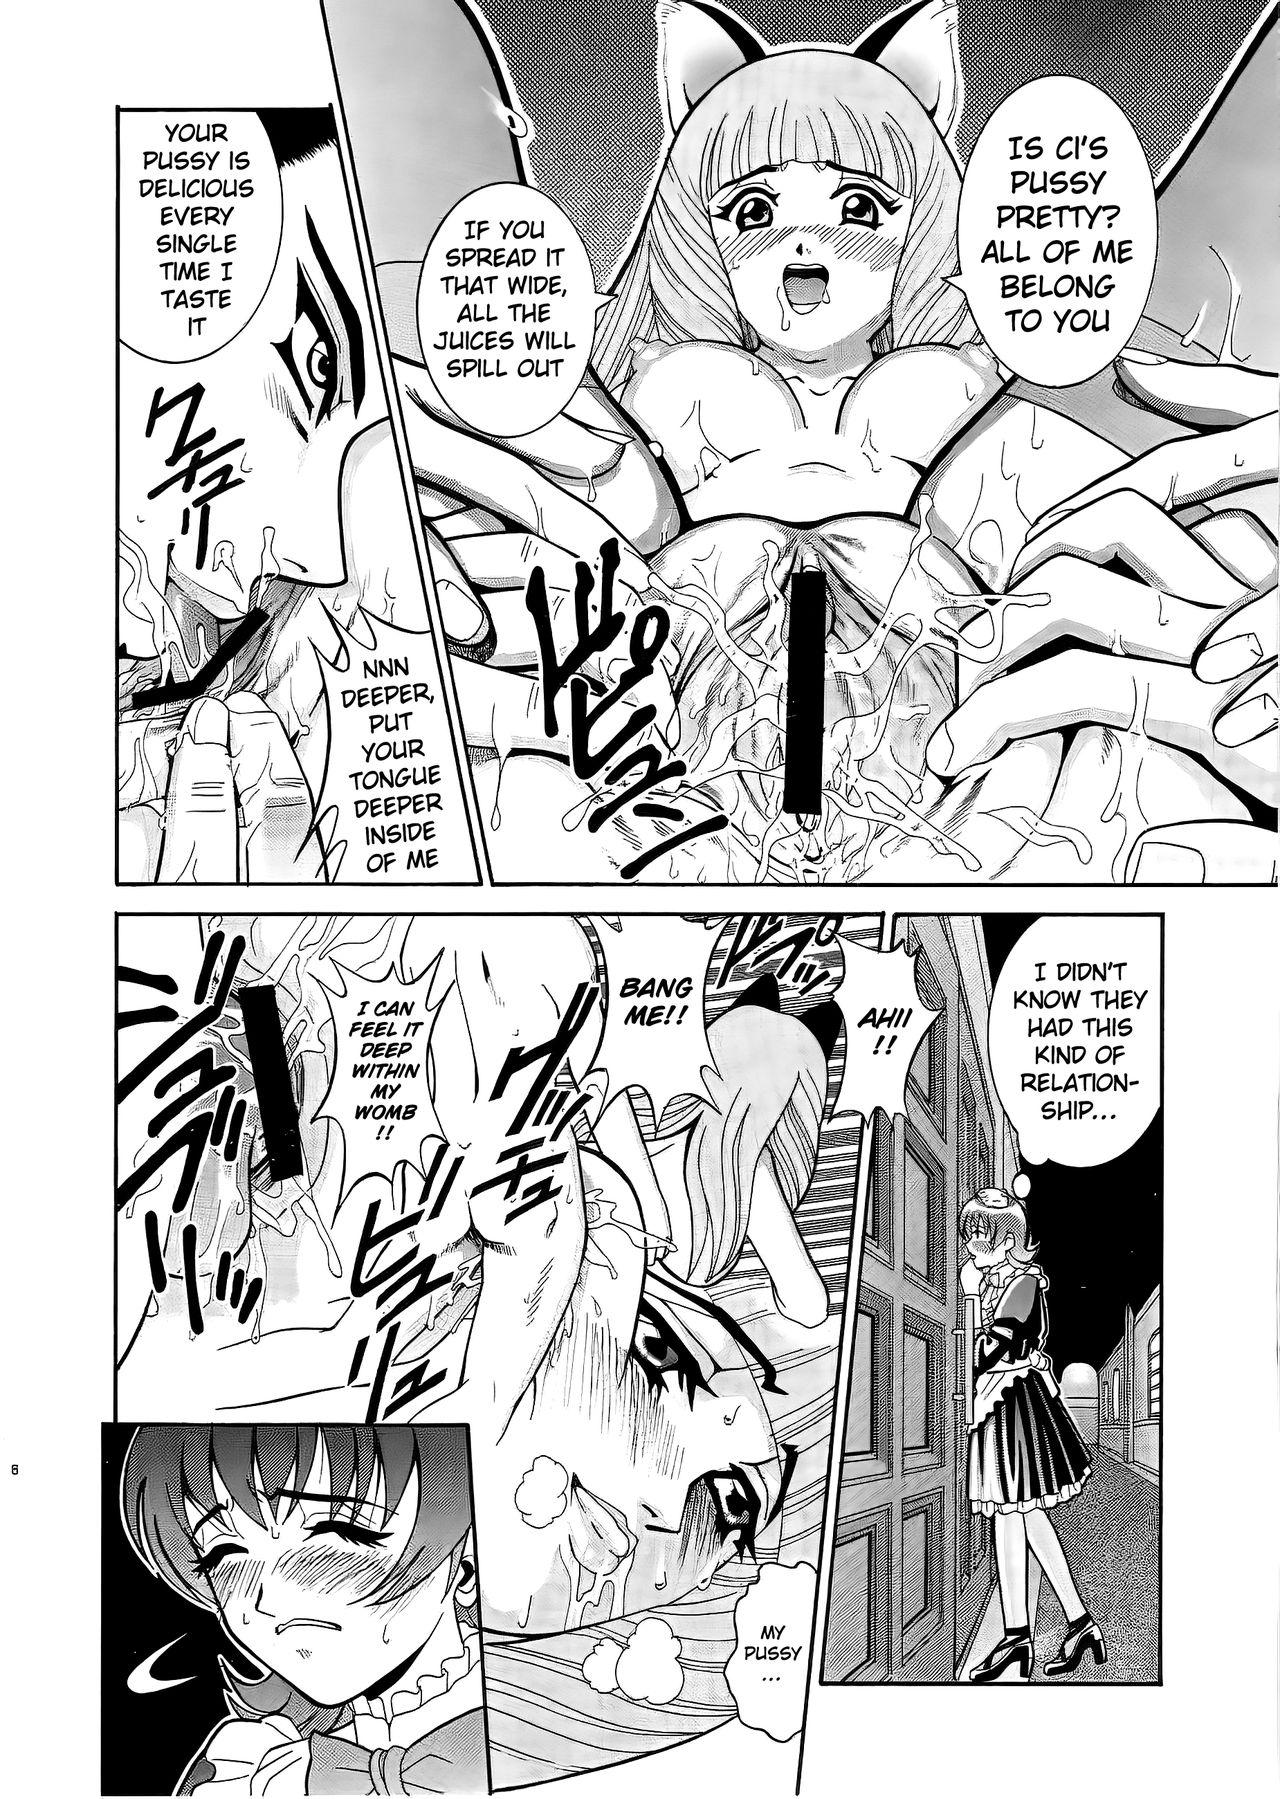 Scandal ANGEL PAIN 6 - Sakura taisen | sakura wars Snatch - Page 7